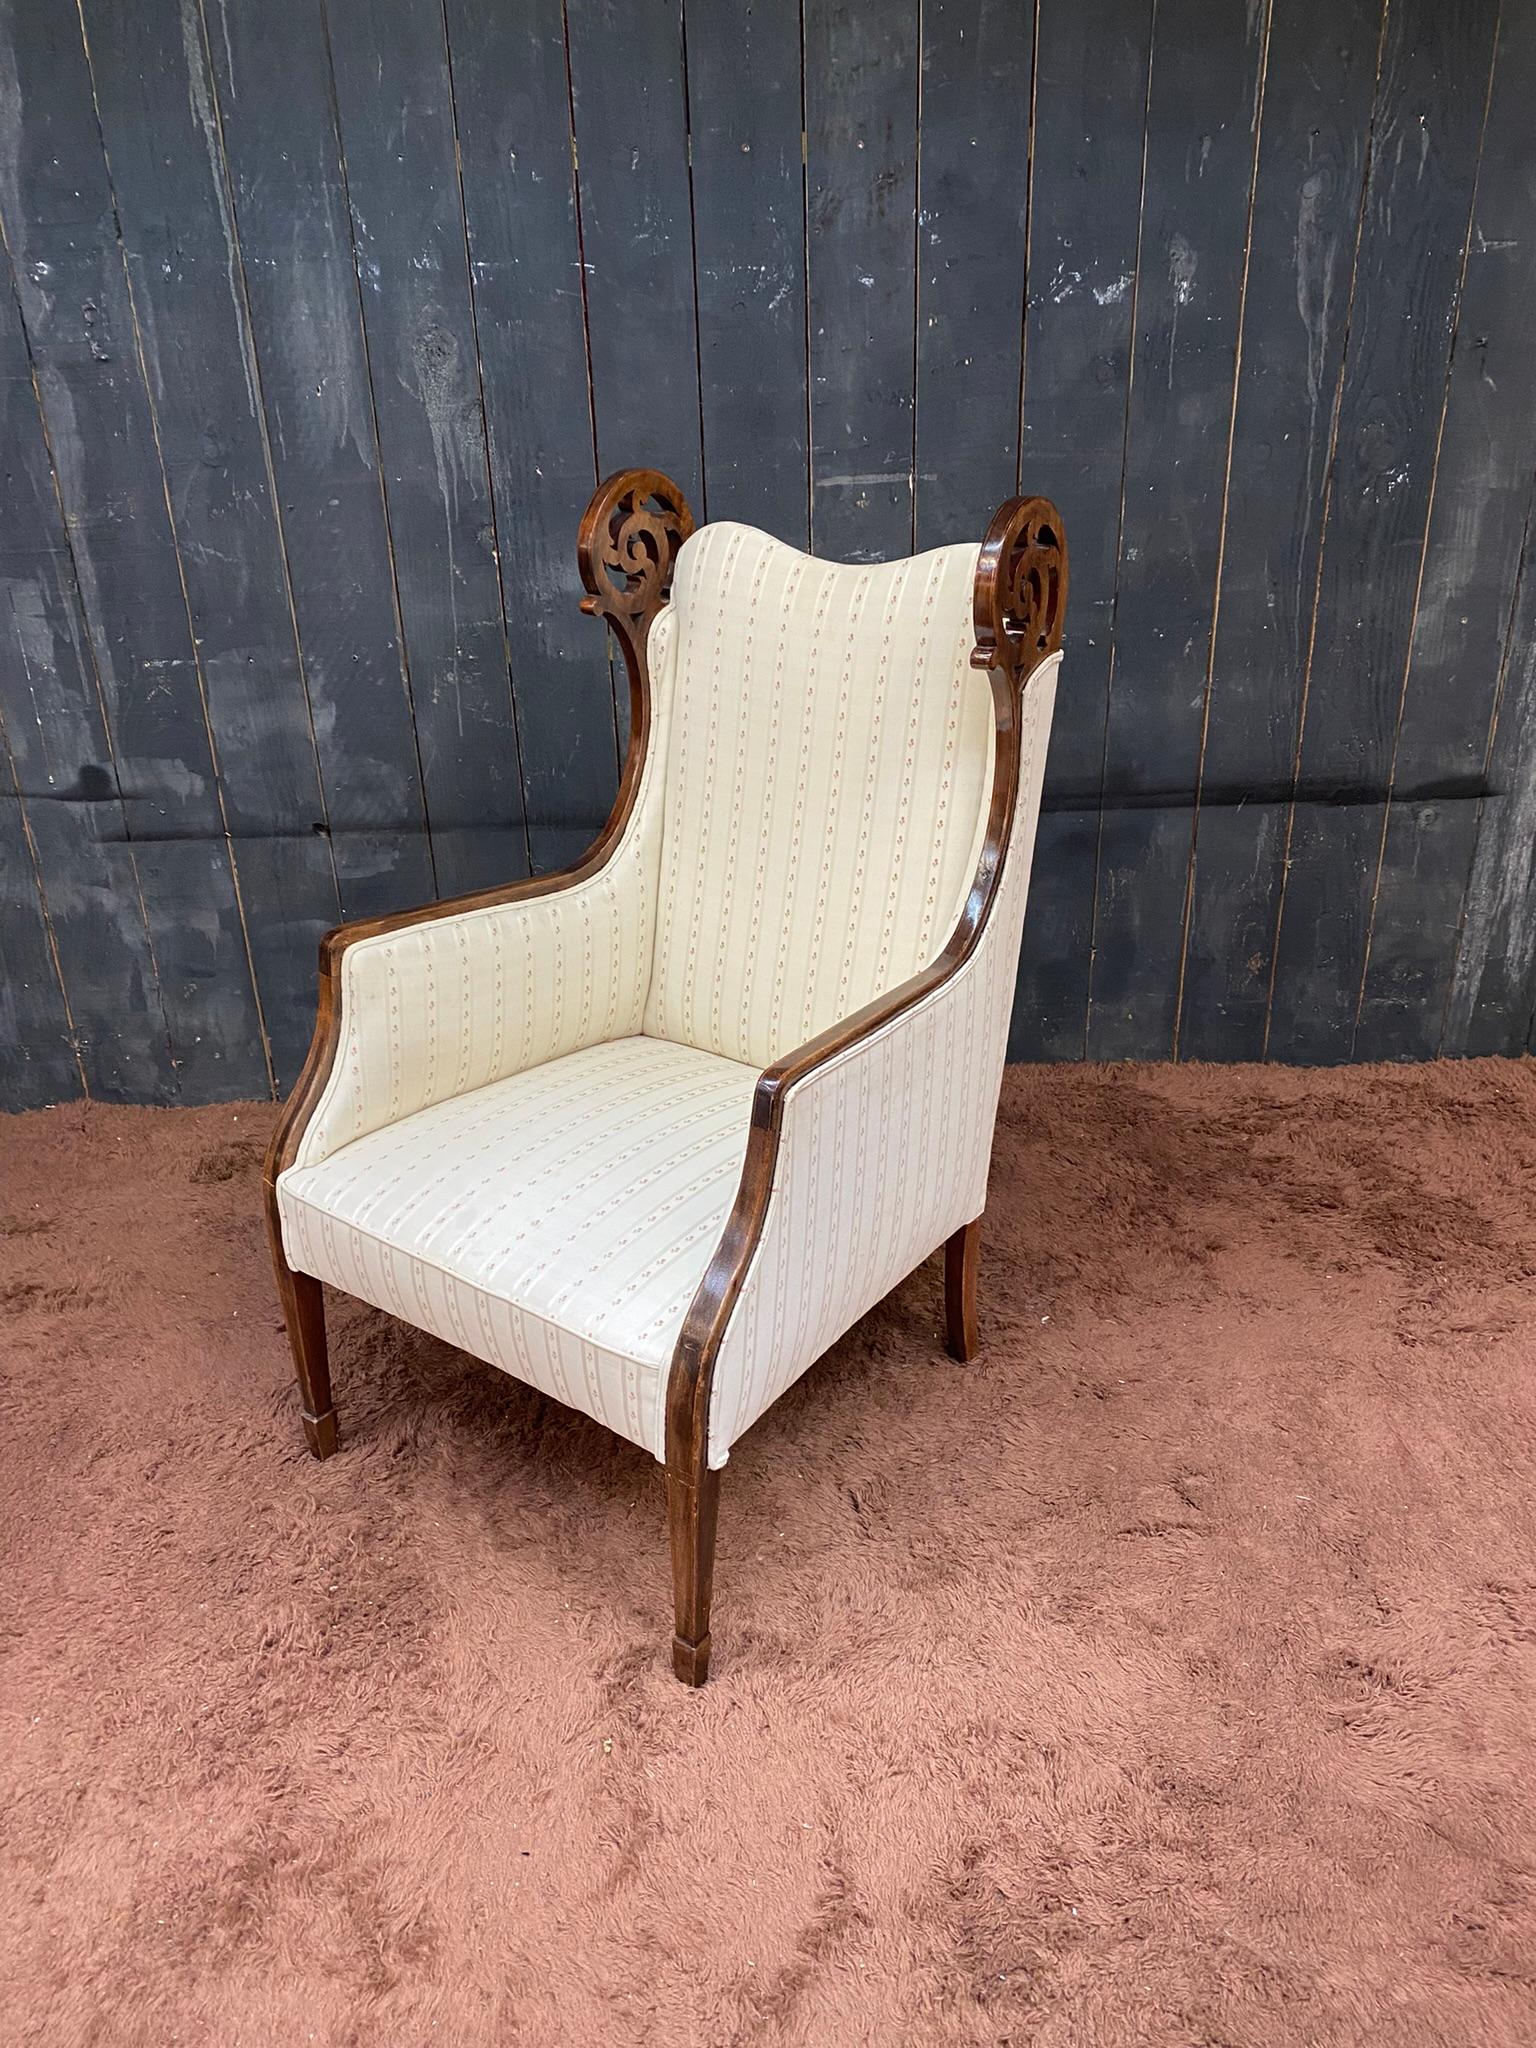 original Nussbaum Ohrensessel um 1900
Der Sessel wurde vor kurzem neu gepolstert und neu lackiert,
kleine Flecken auf dem Stoff